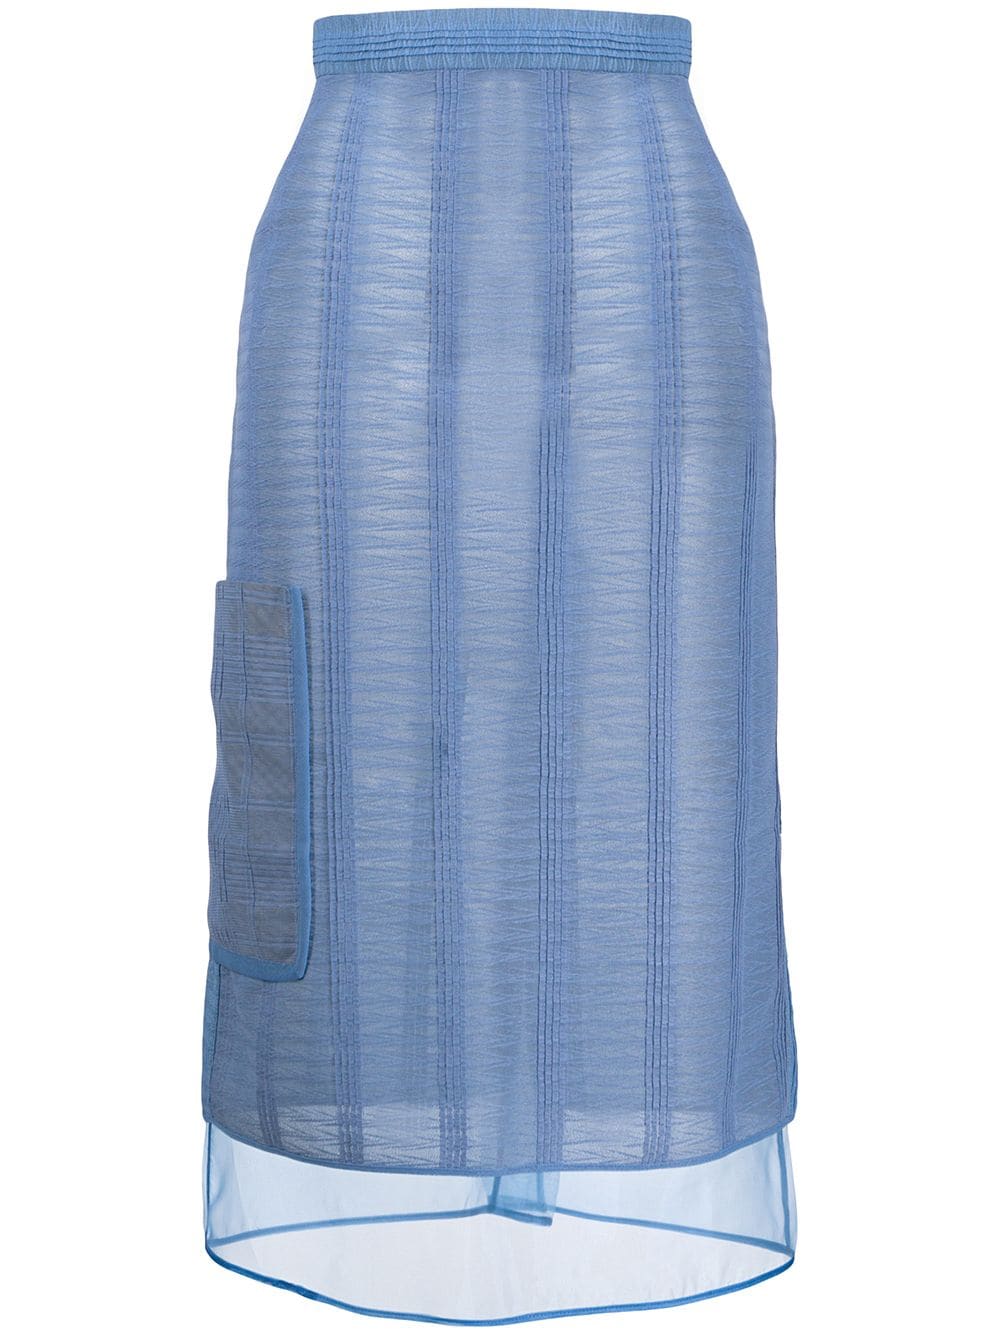 фото Marco de vincenzo полупрозрачная юбка с абстрактным узором